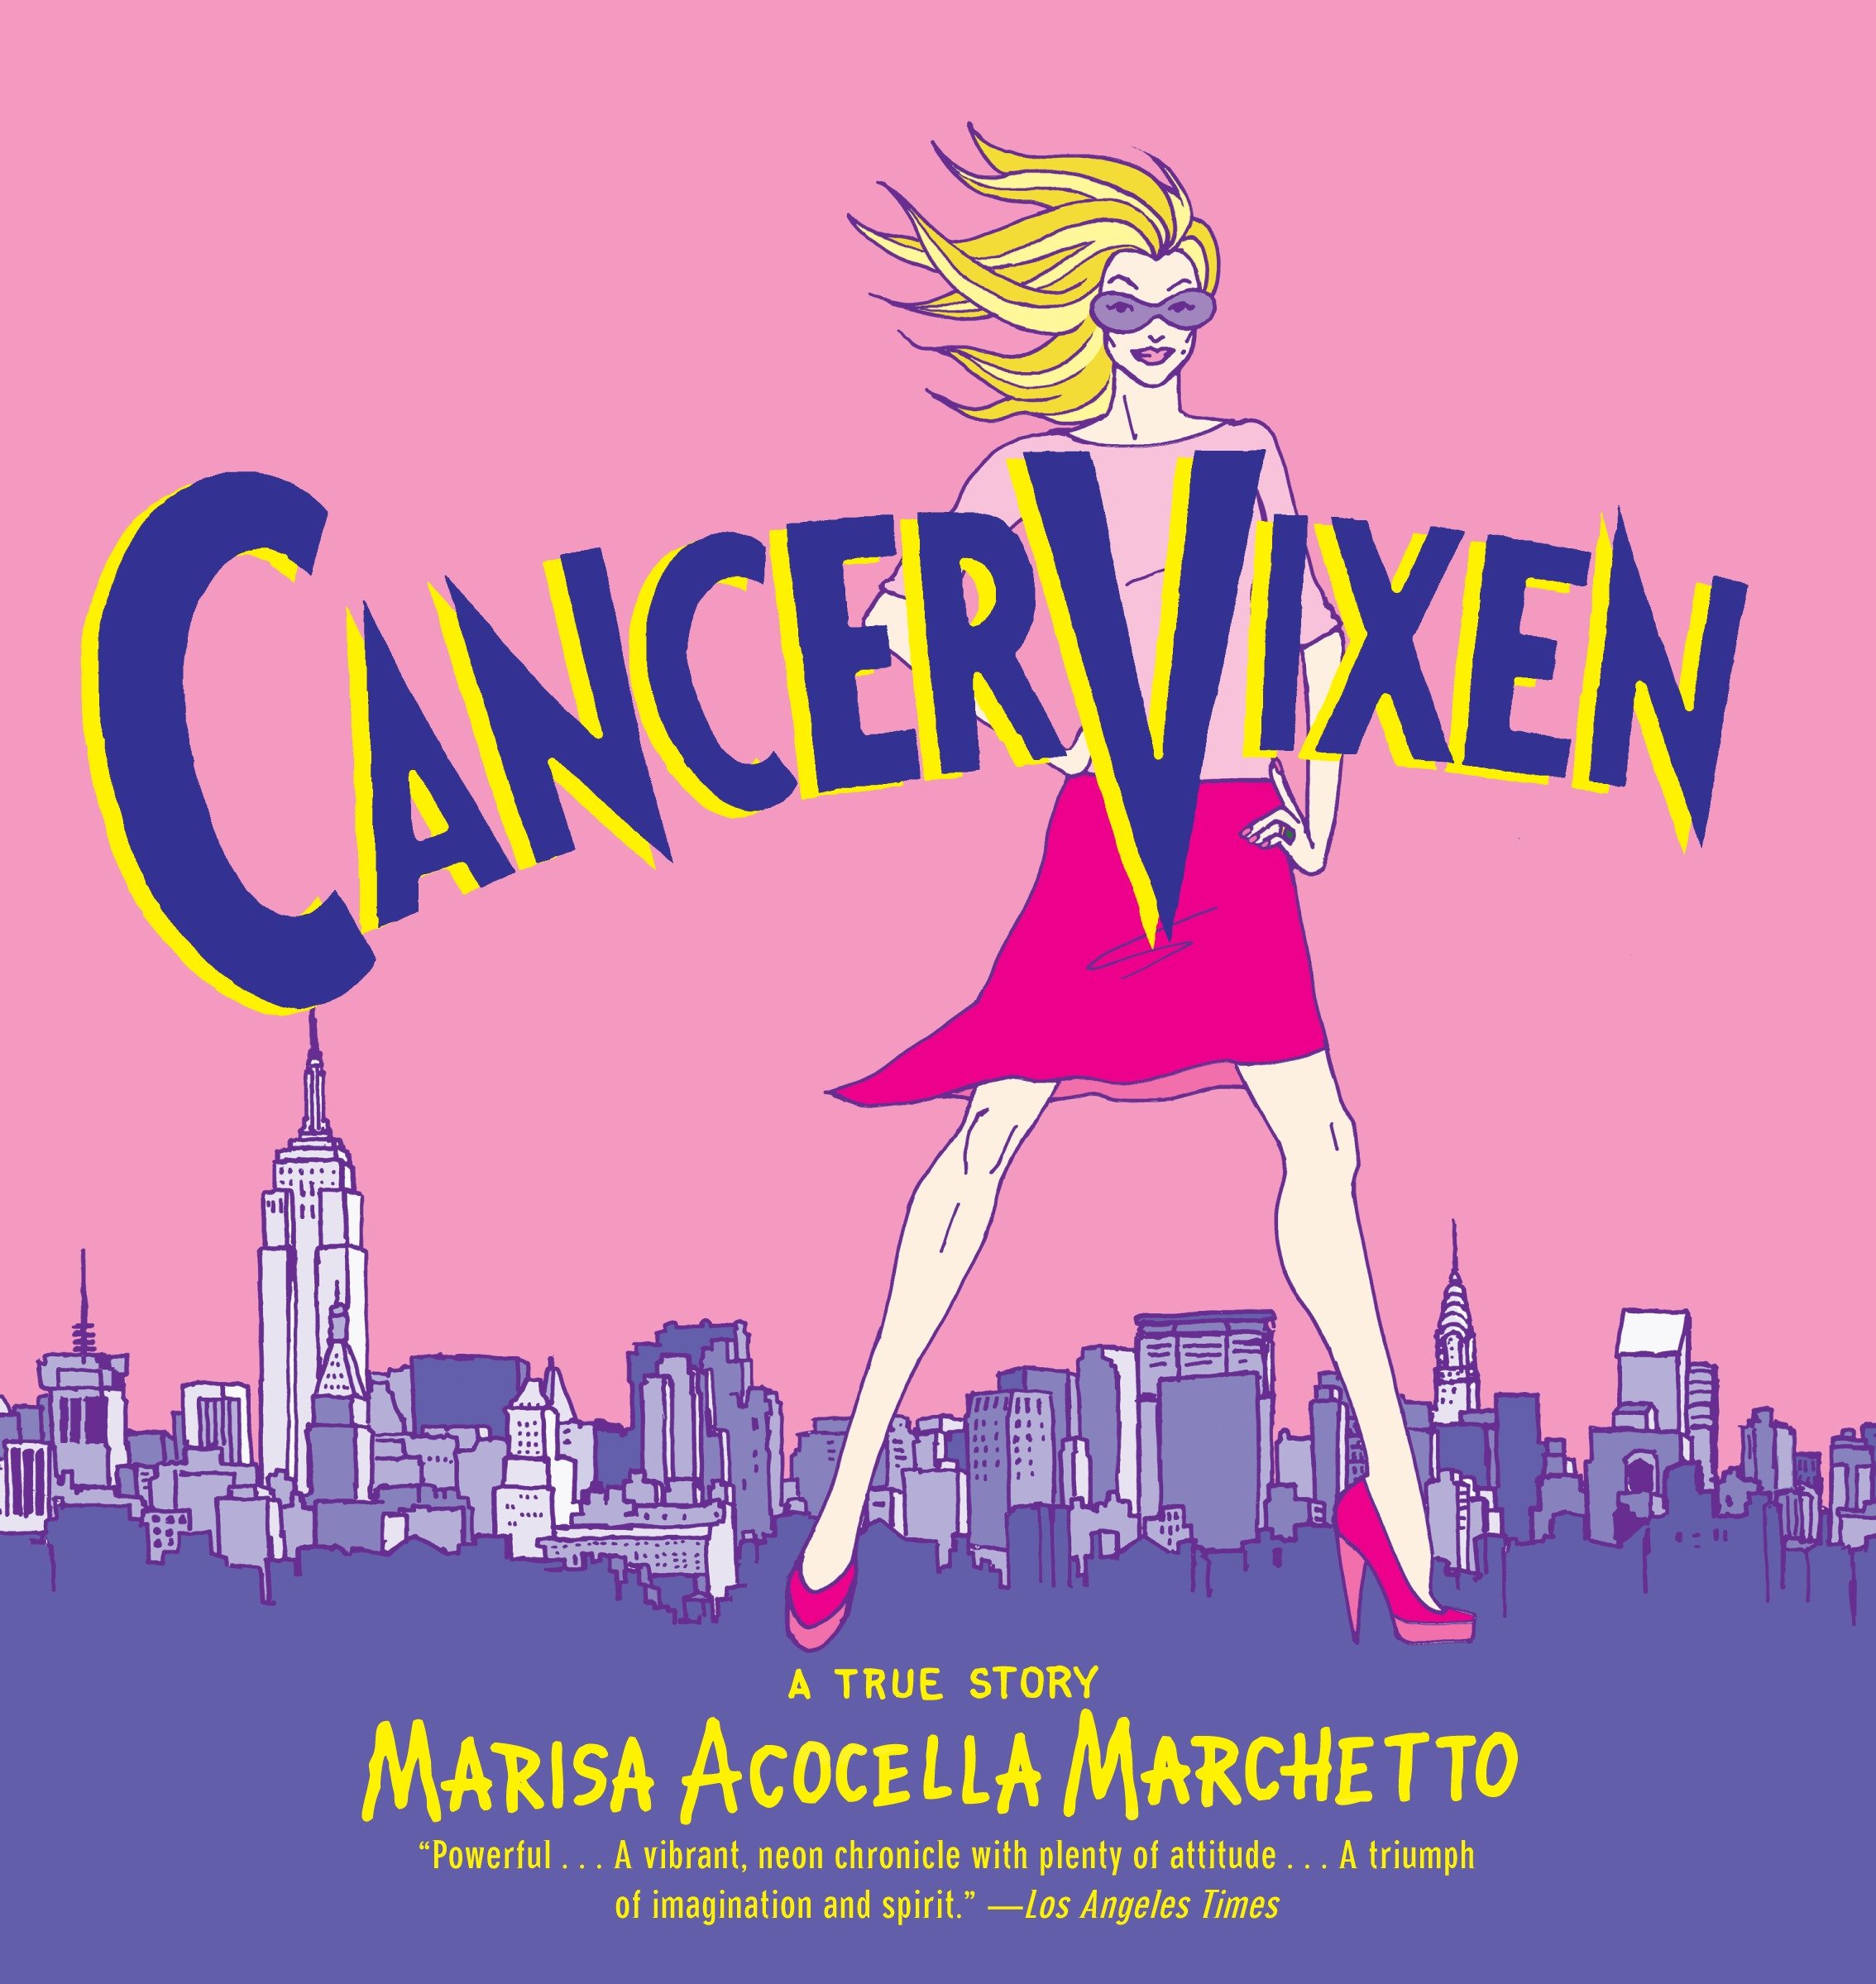 Cancer Vixen Graphic Novel